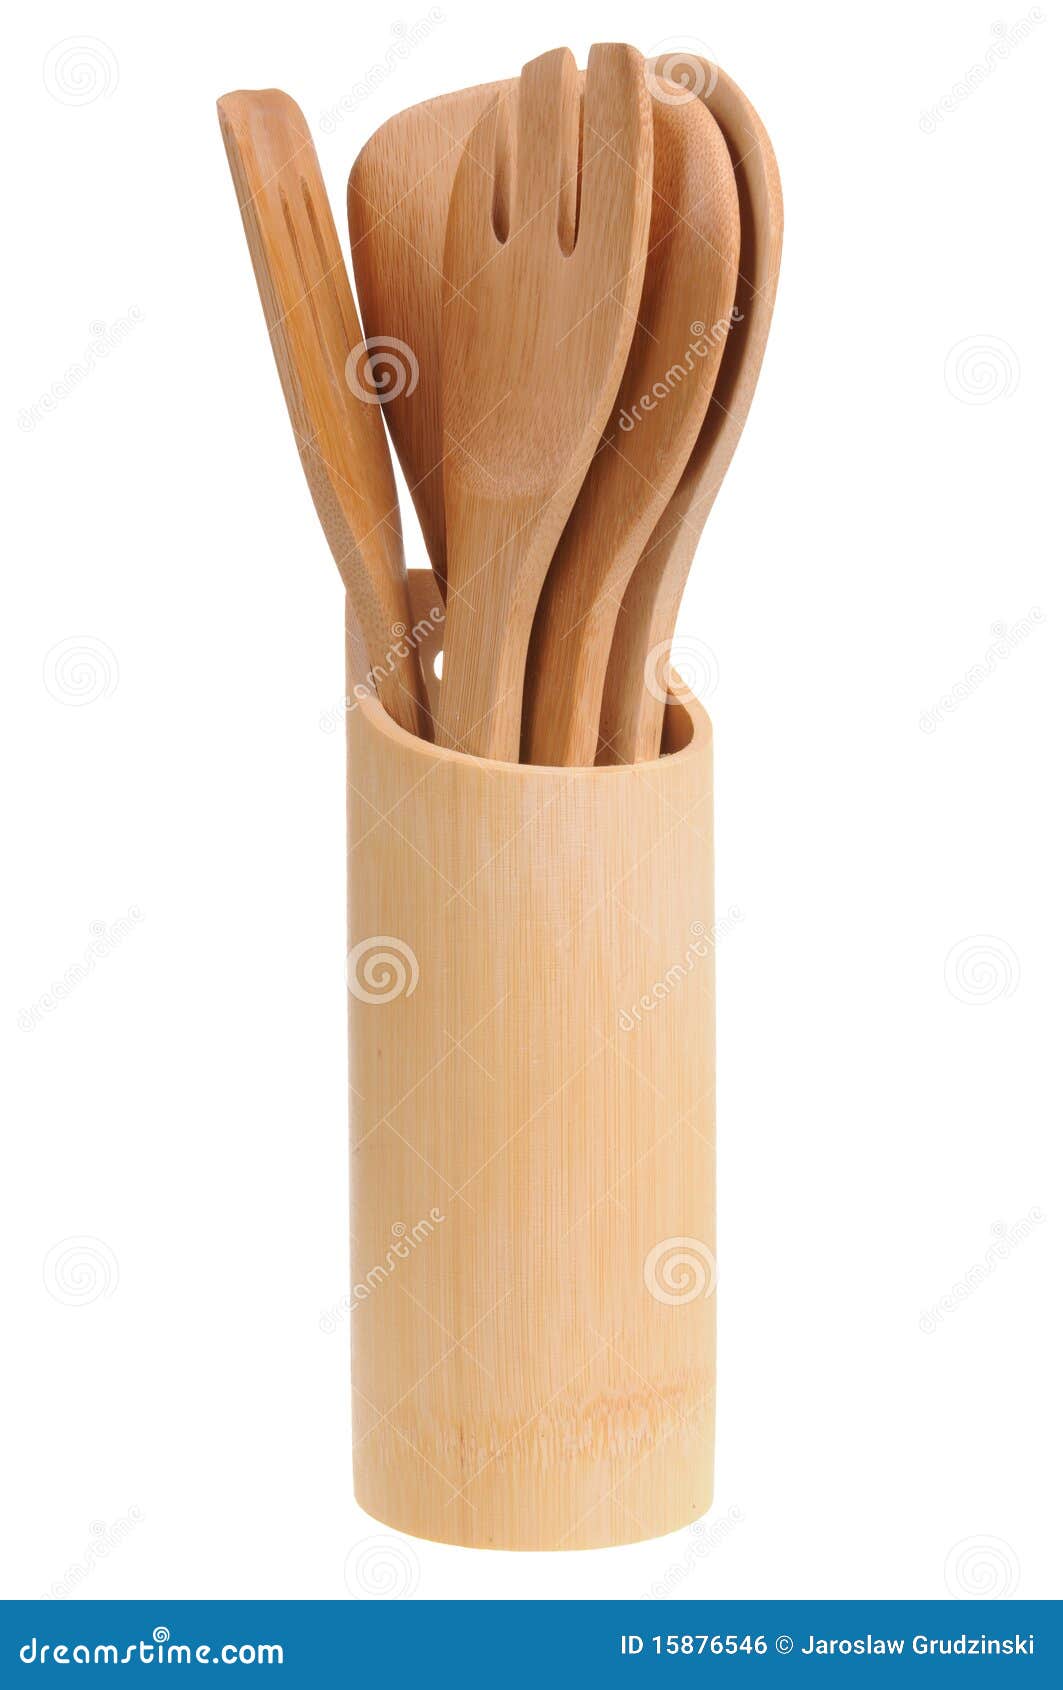 The Wooden utensils Stock Photo by ©oksixx 109480050